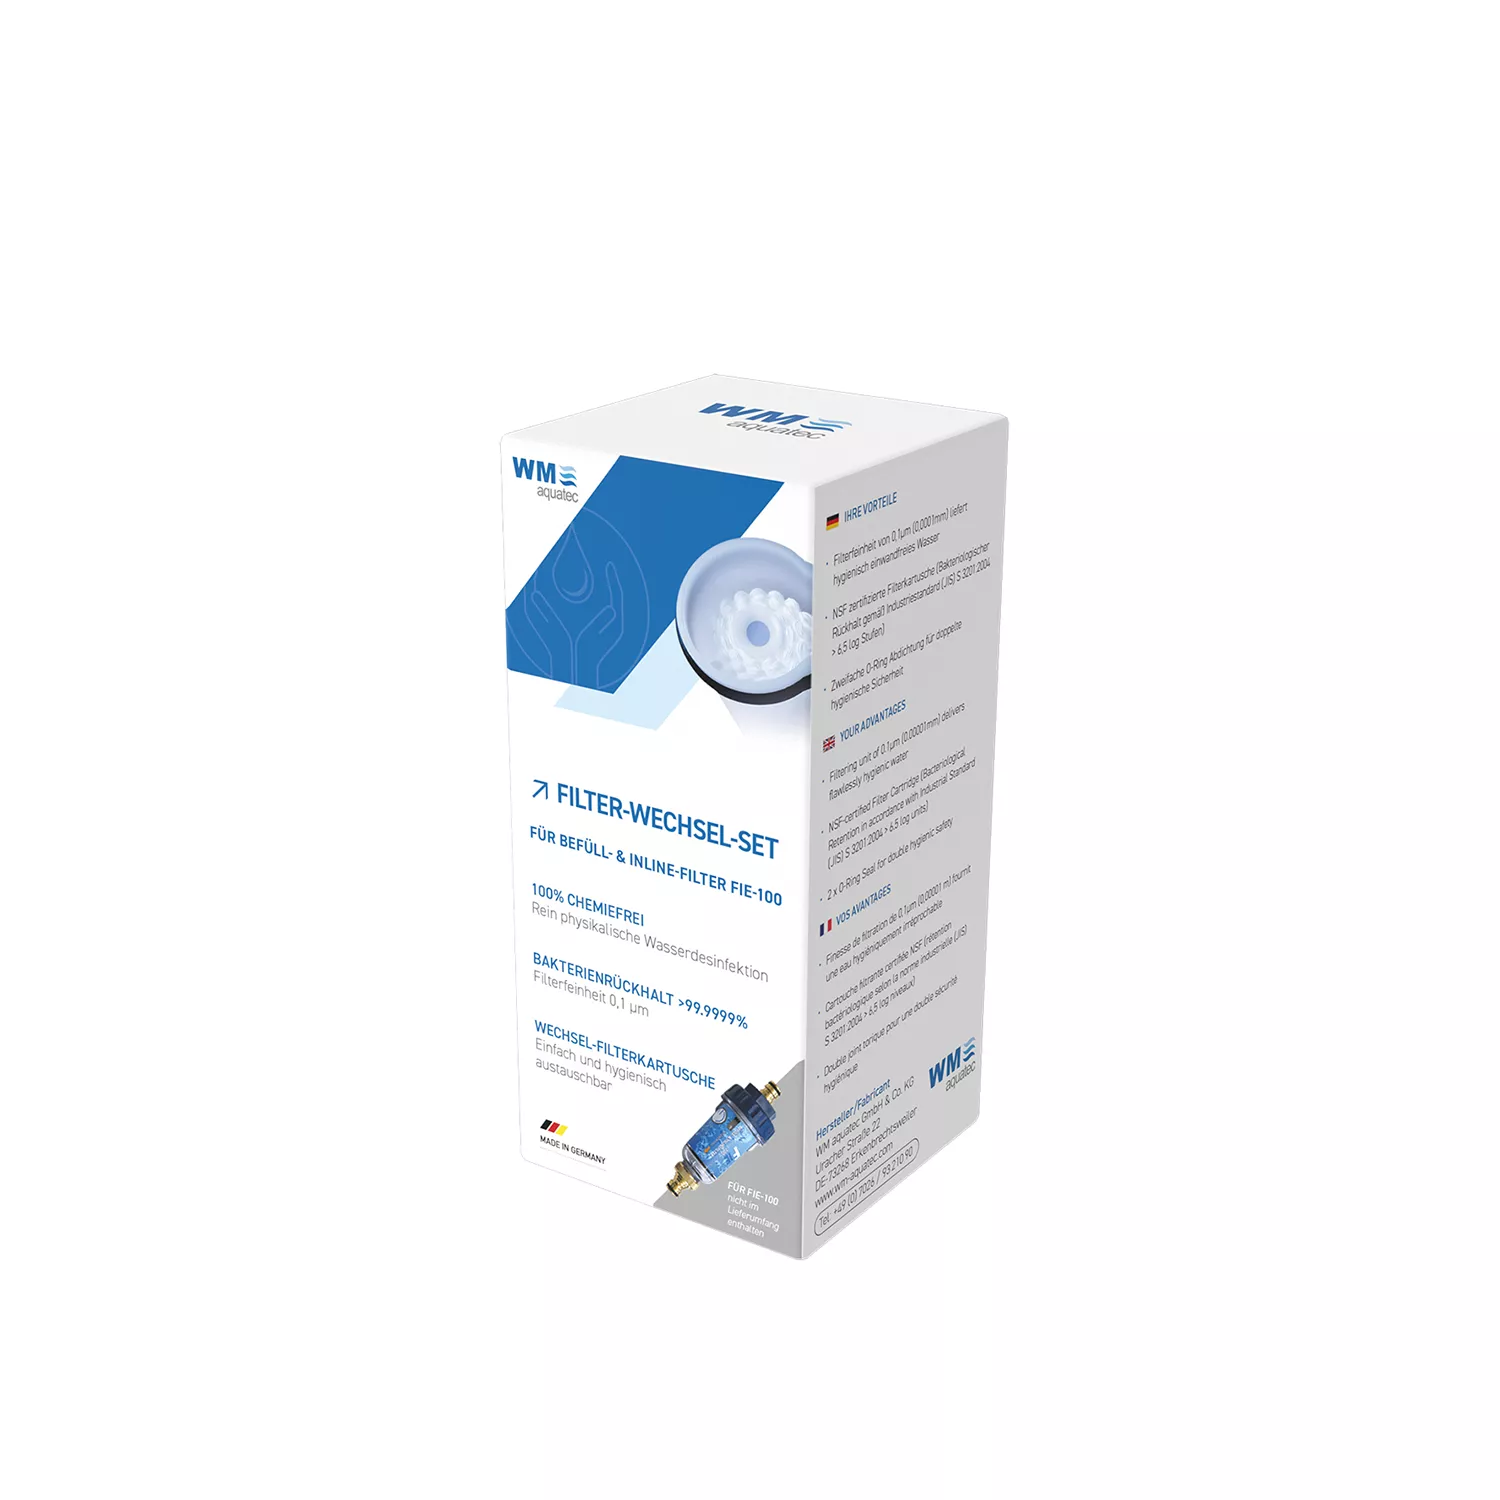 Kit de filtre d'eau Mobile Edition – WM aquatec